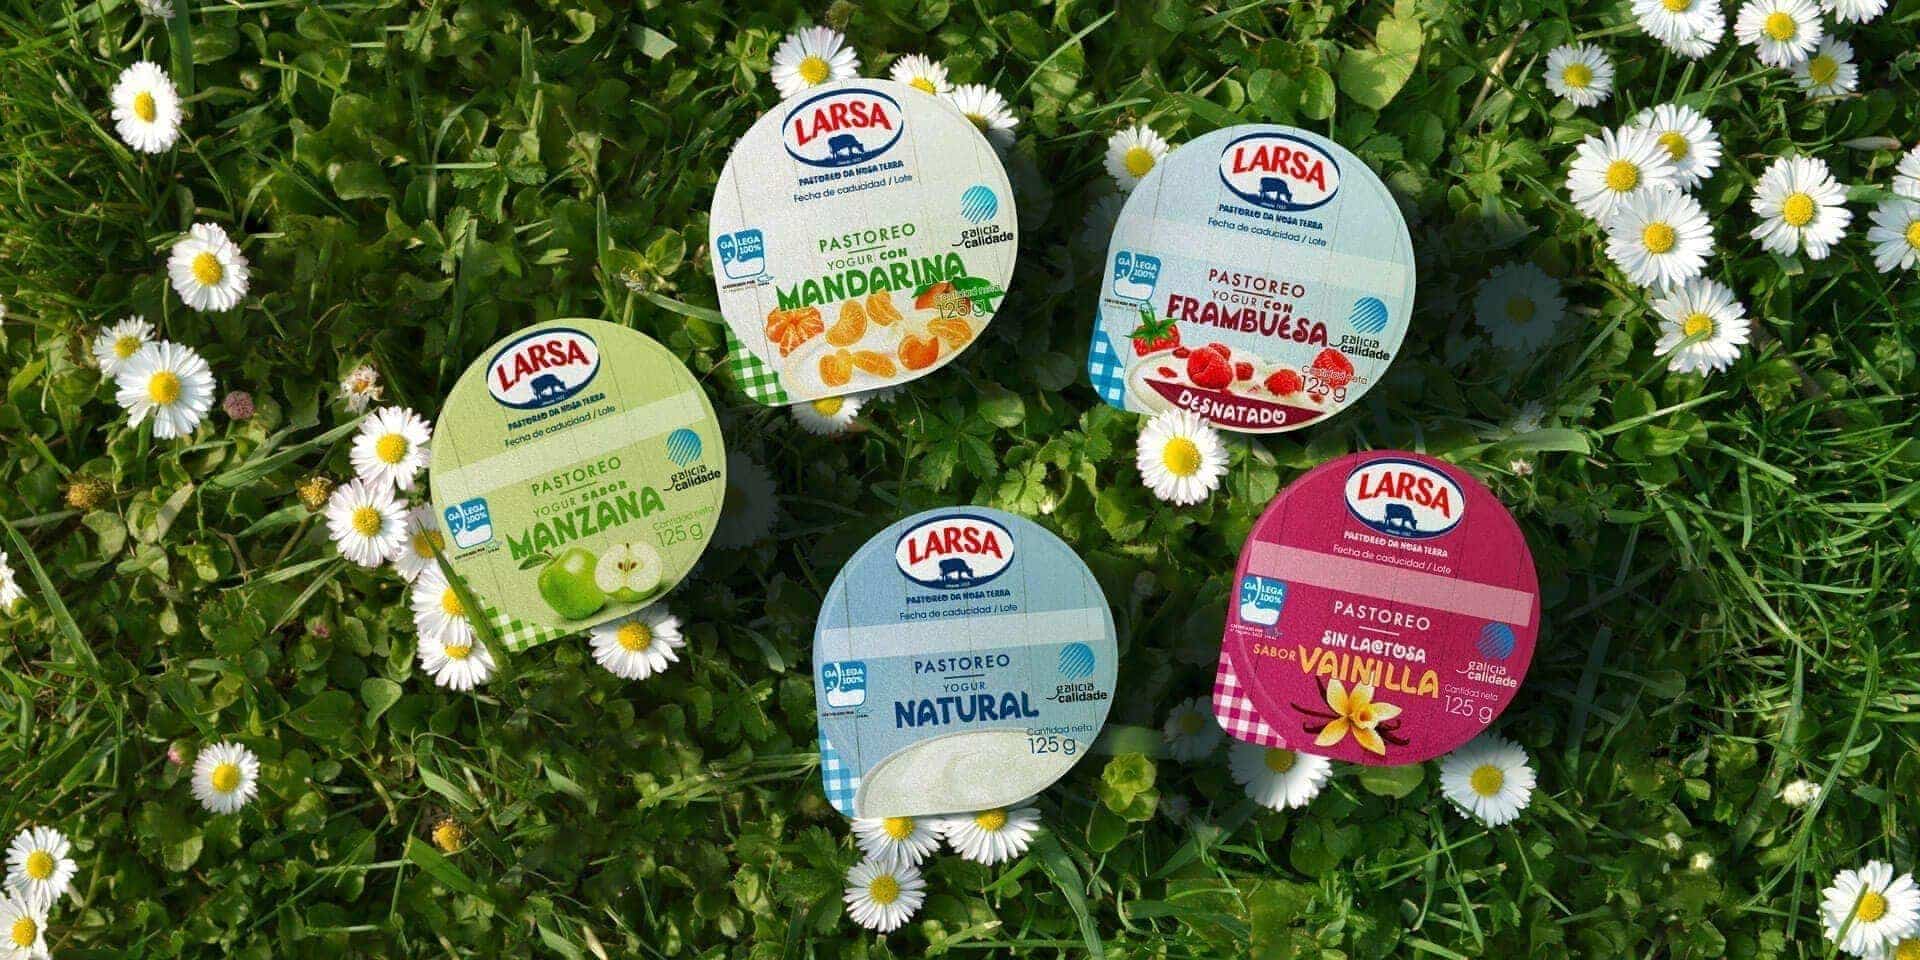 Galicia Calidade avala la gama de yogures Larsa y la apuesta de la marca por la Leche de Pastoreo certificada y 100% Gallega